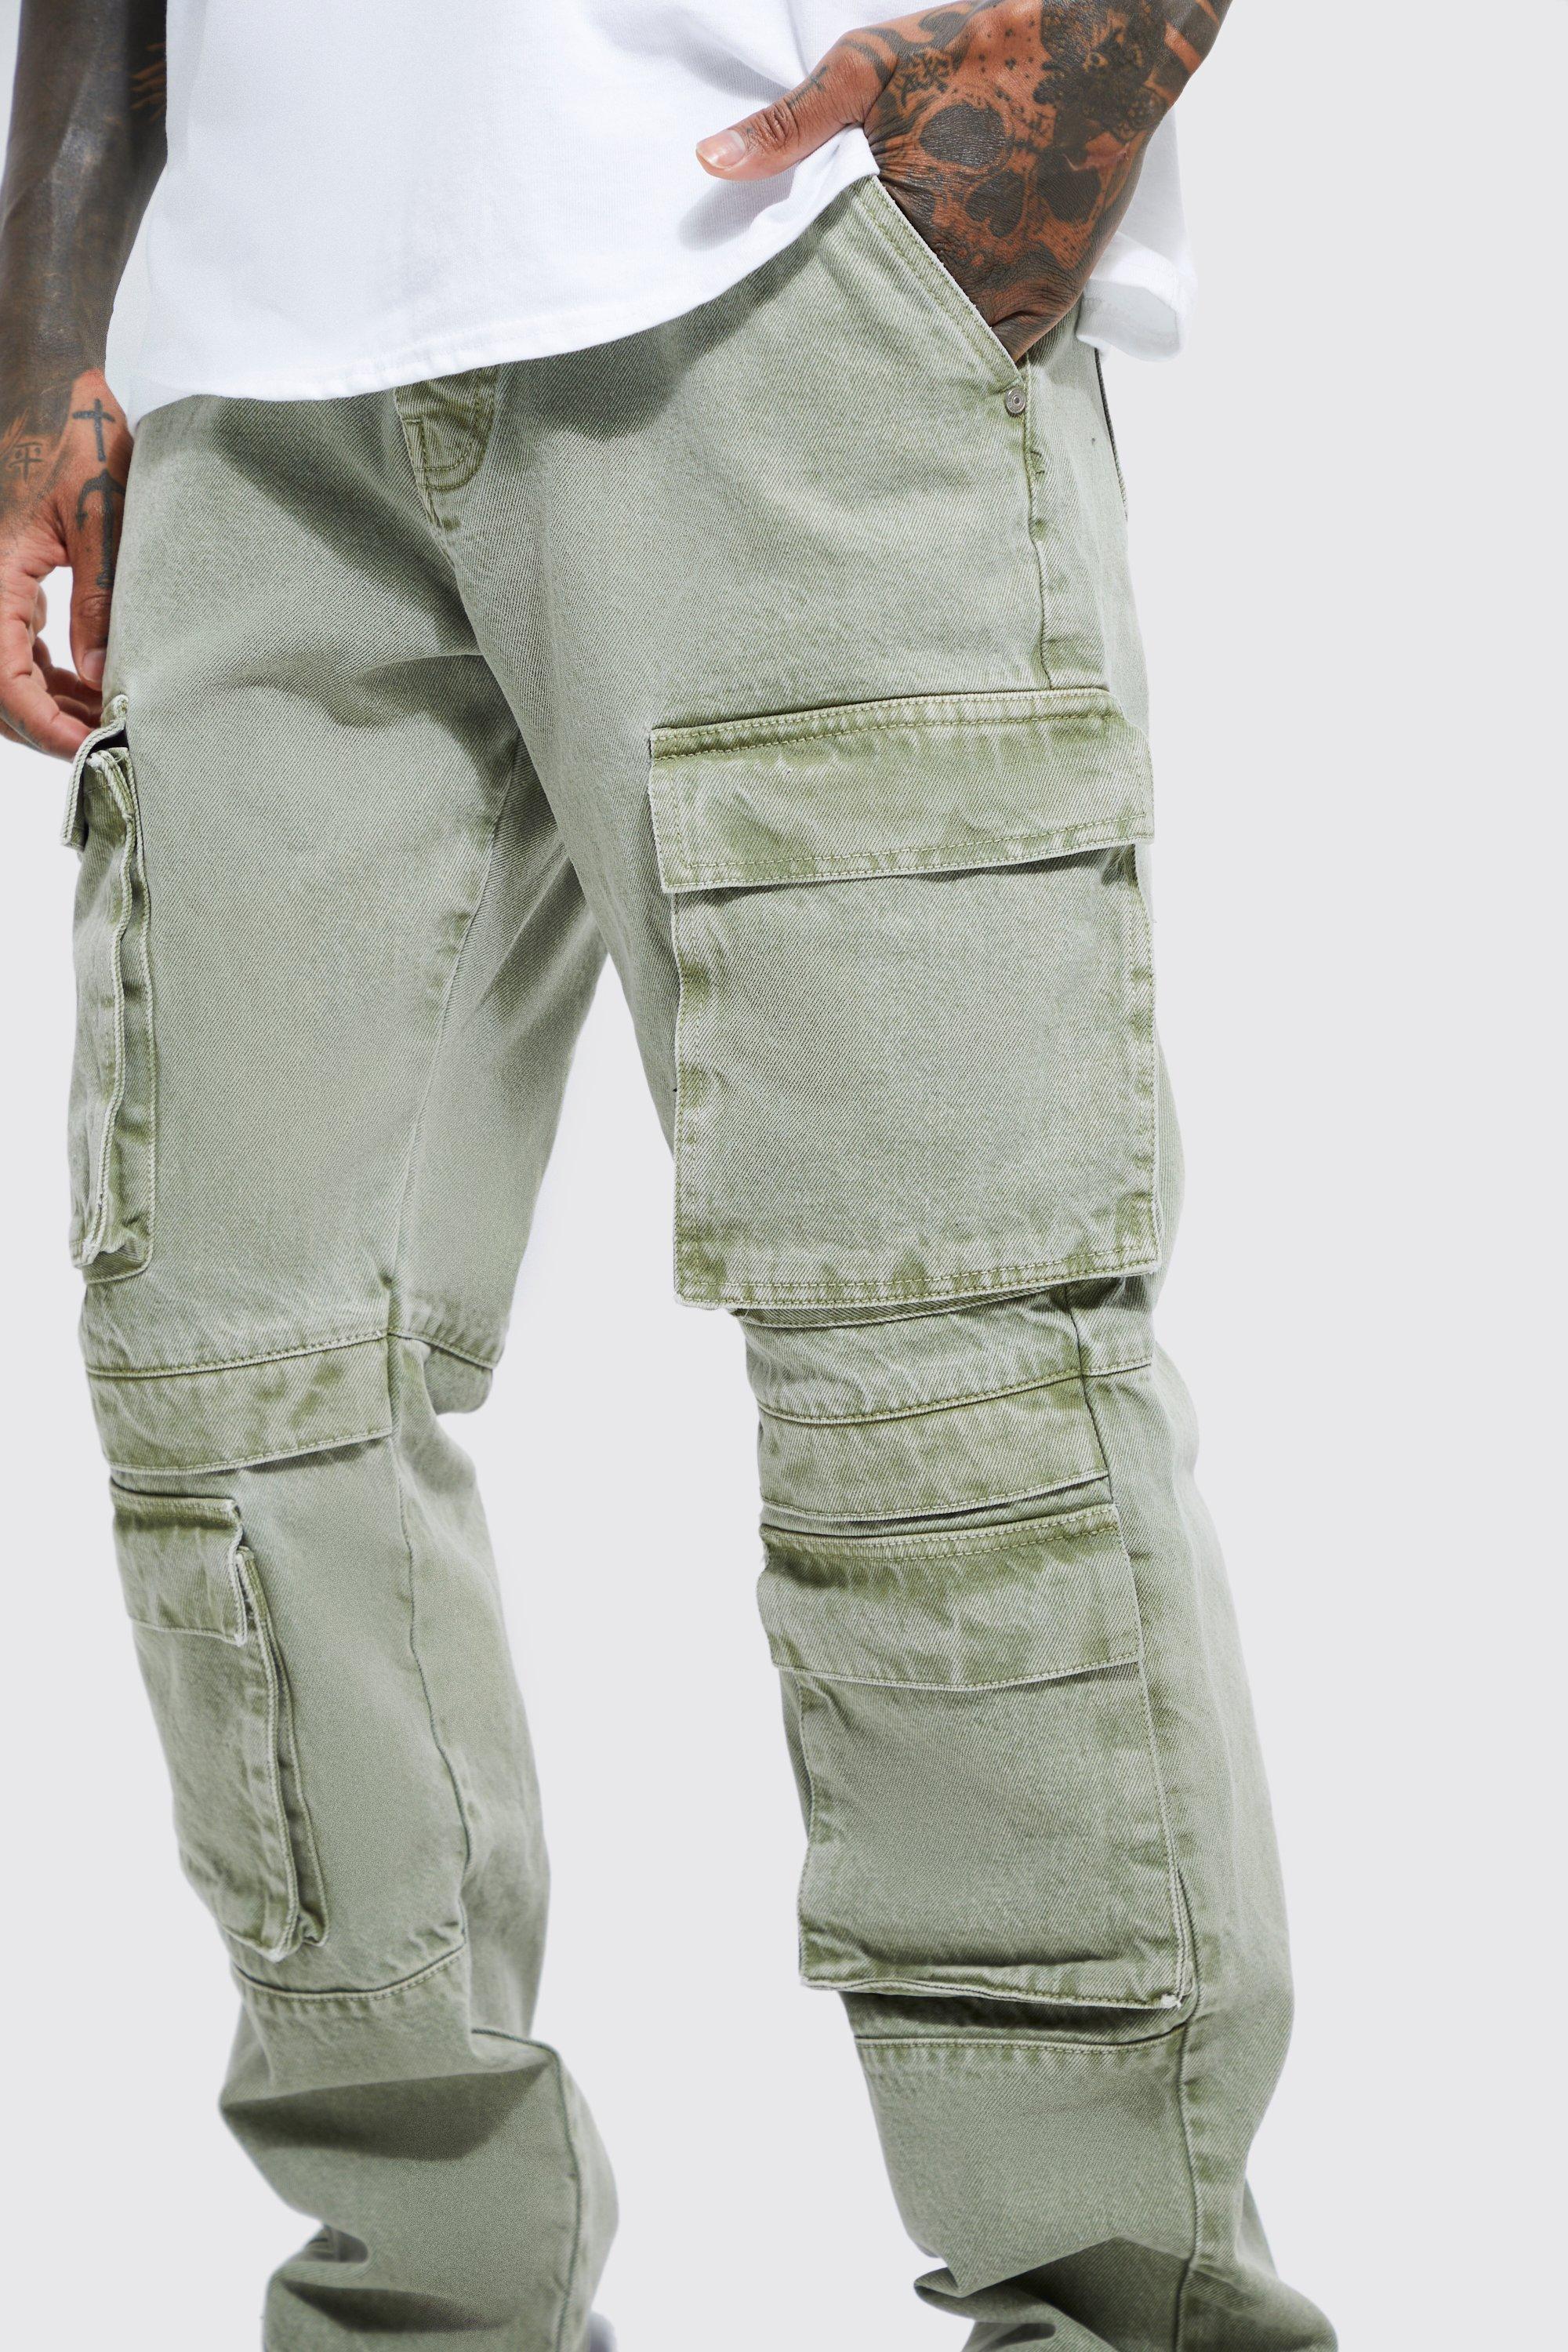 Buy Dark Black Men's Military Cargo Pants Loose Fit Biker Multi